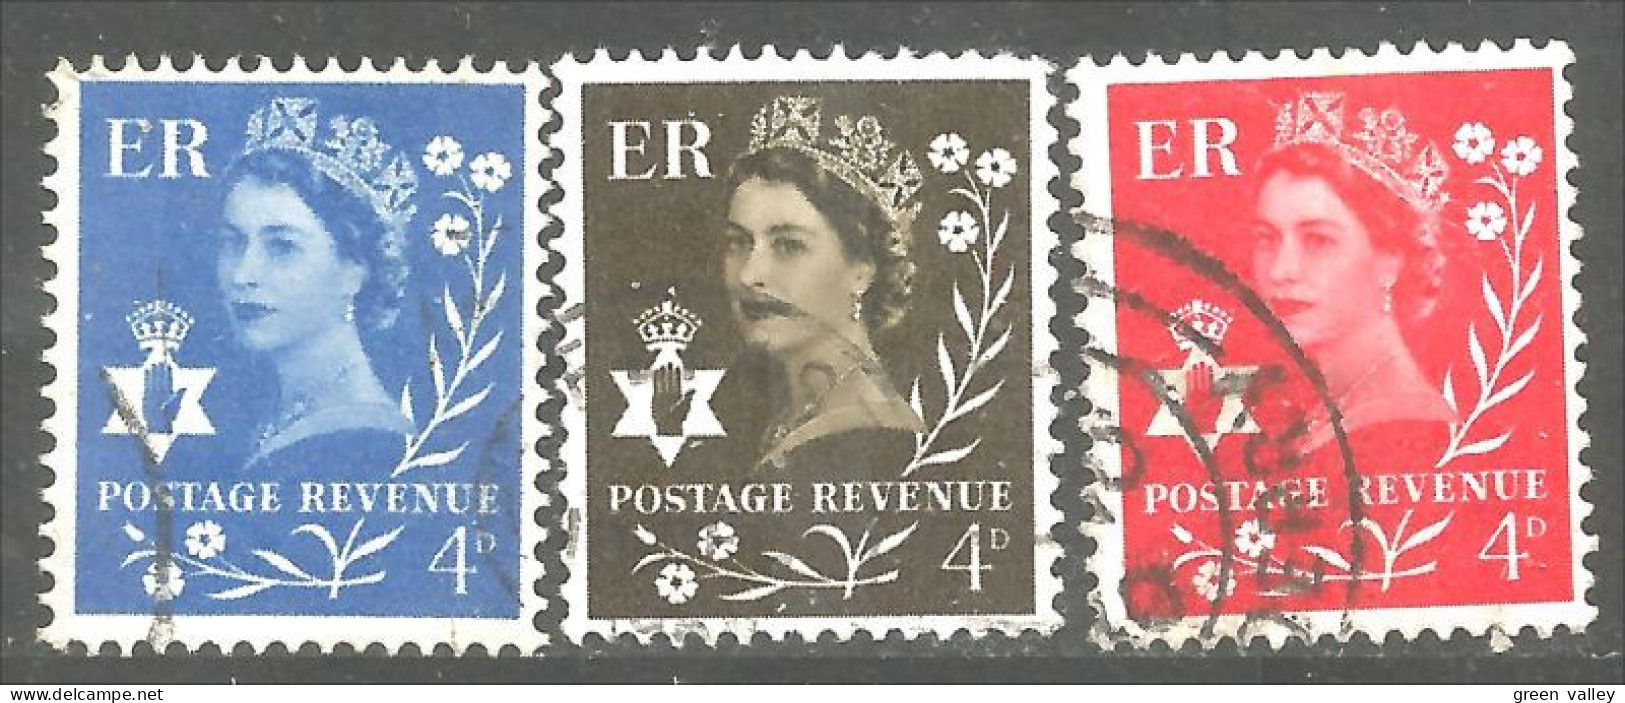 414 G-B Regionals Northern Ireland 3 Stamps Queen Elizabeth (REG-28) - Irlanda Del Norte